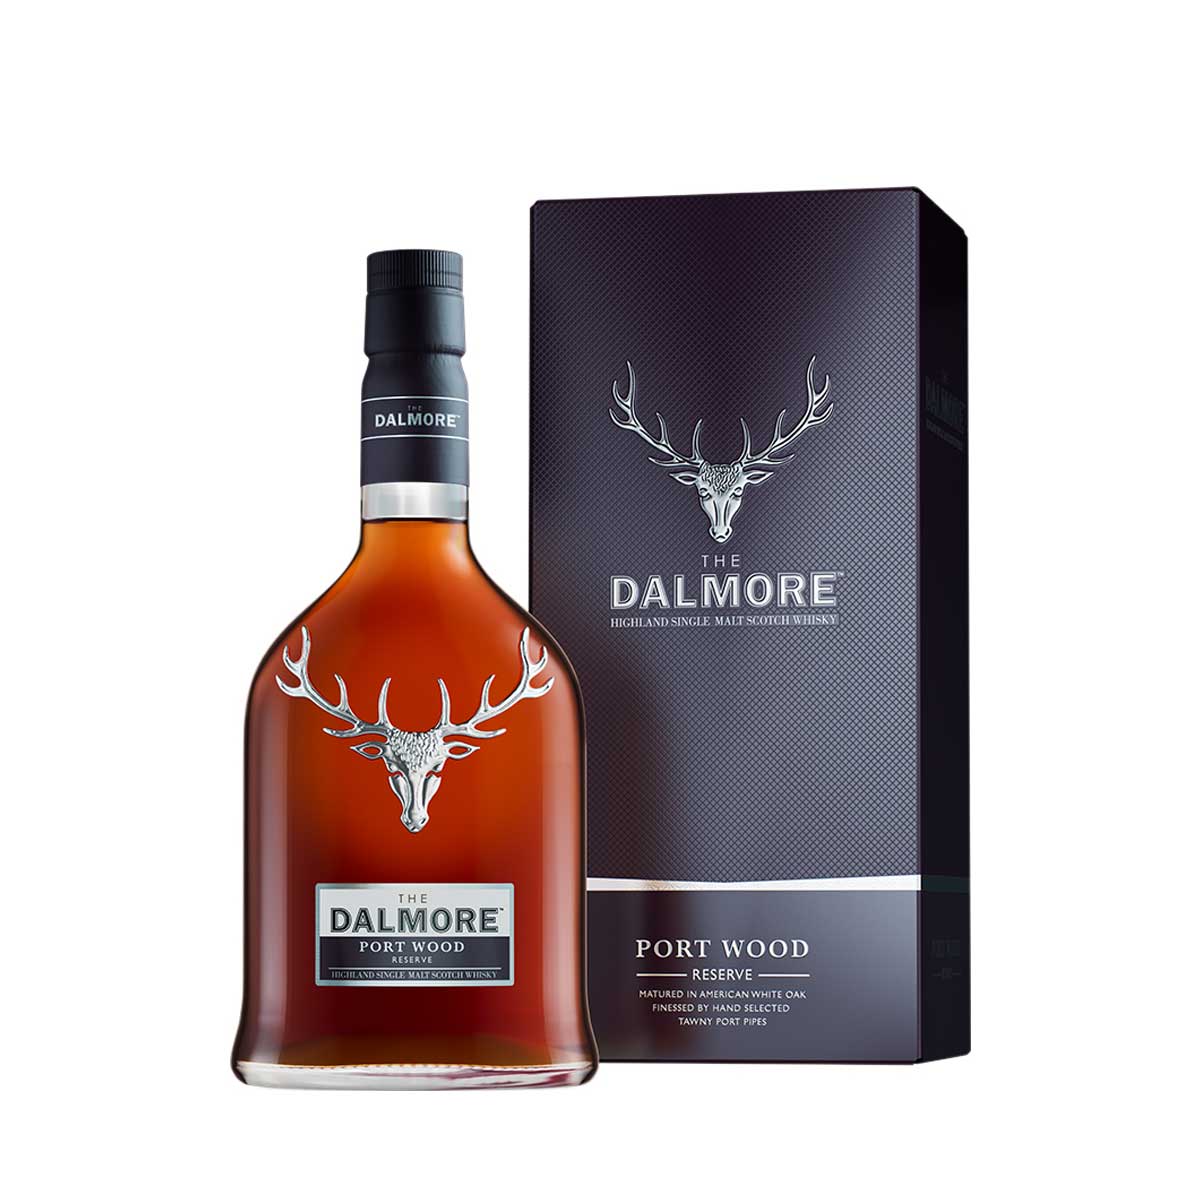 TAG Liquor Stores Canada Delivery-Dalmore Port Wood Scotch Whisky 750ml-spirits-tagliquorstores.com